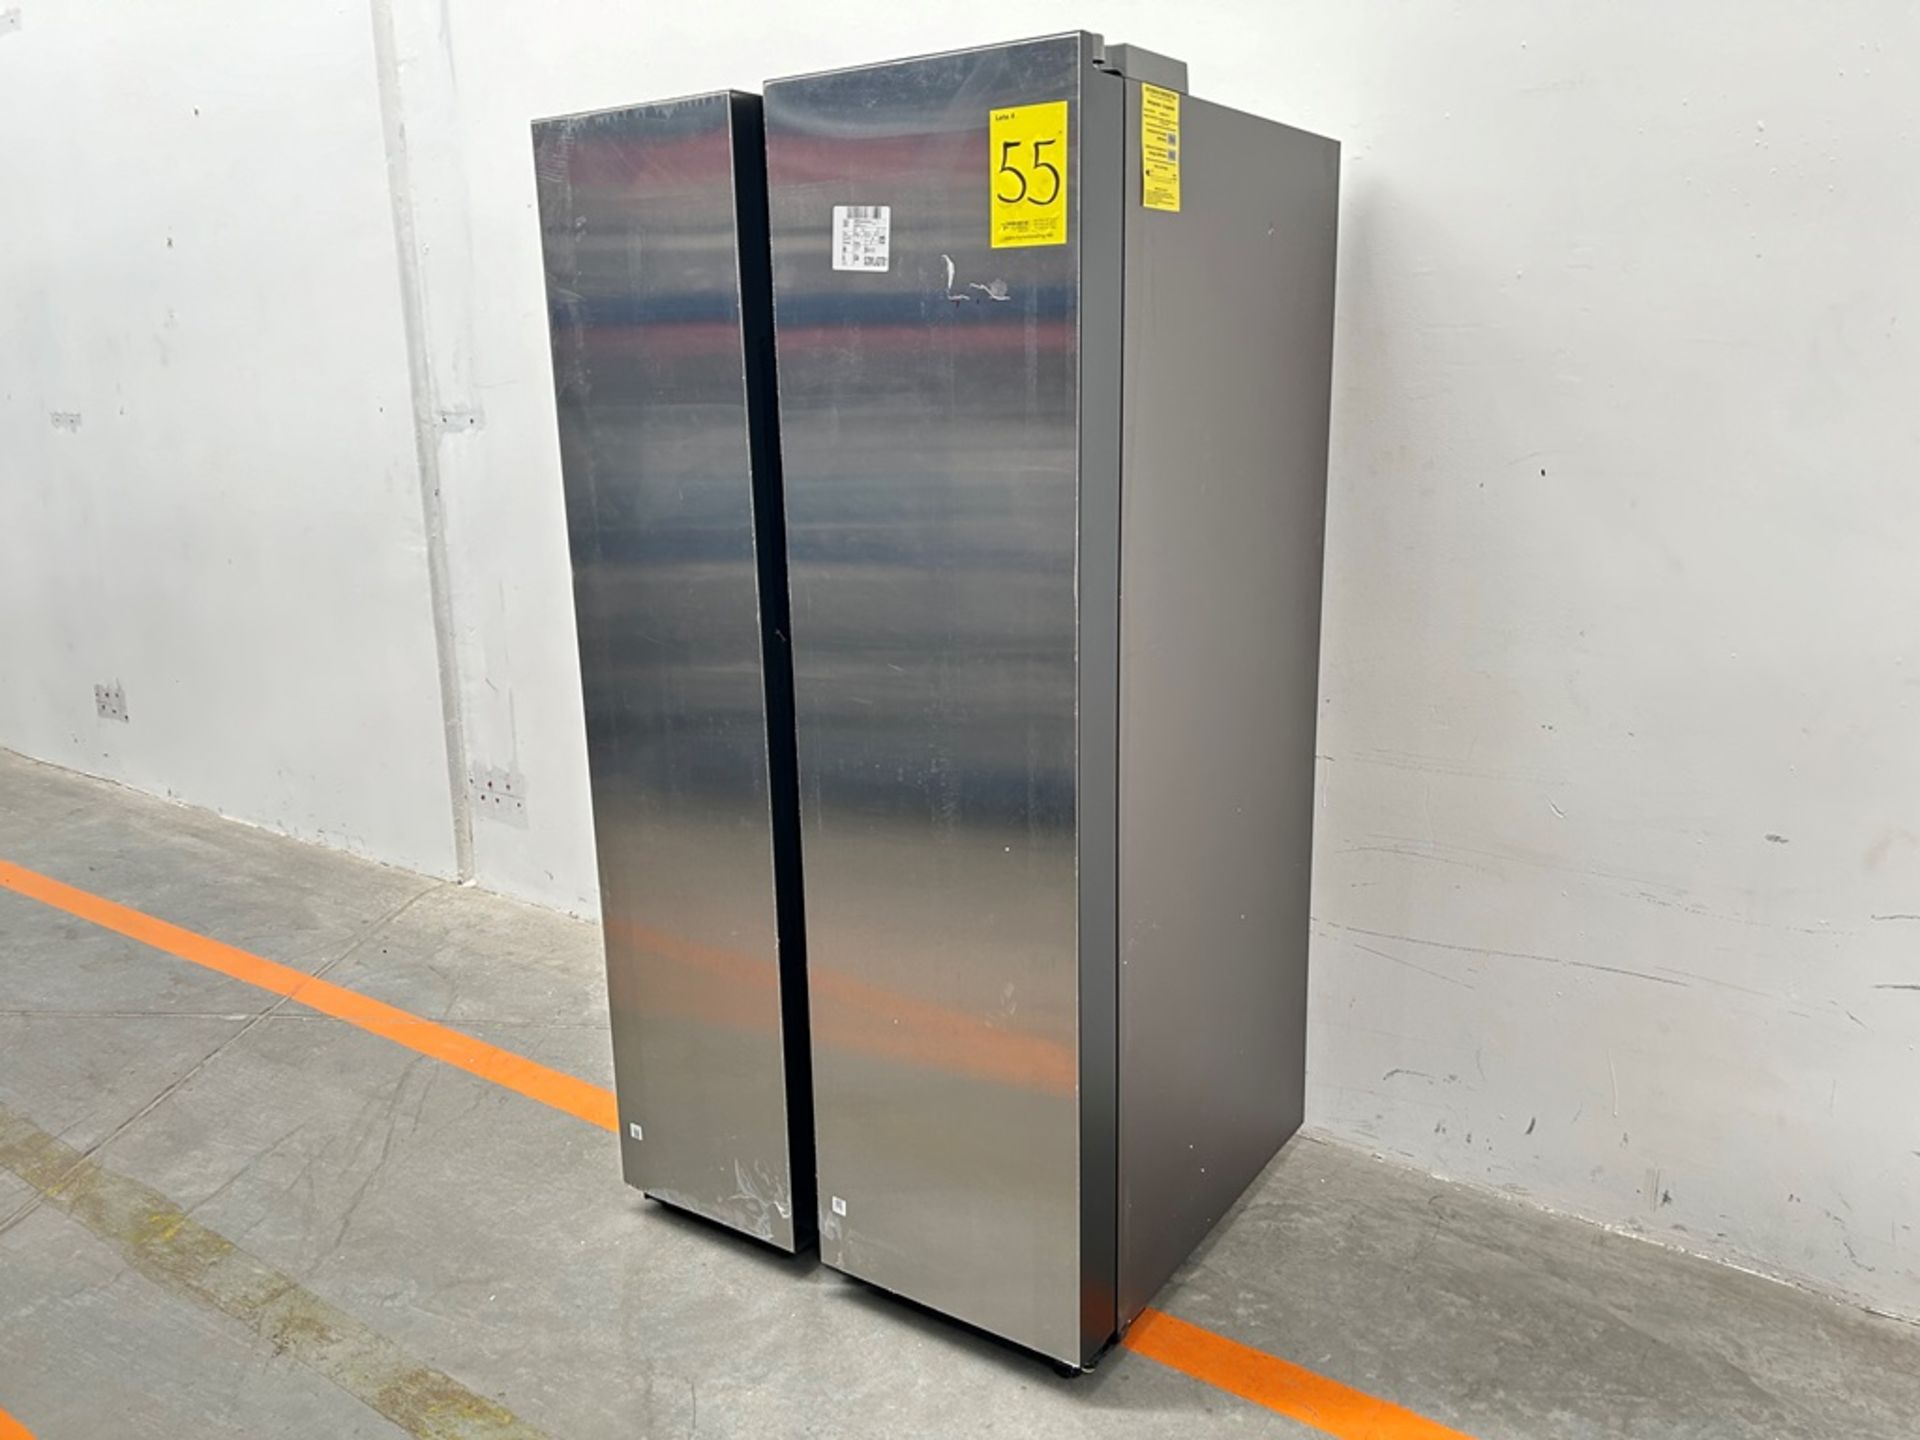 (NUEVO) Refrigerador Marca SAMSUNG, Modelo RS28CB70NAQL, Serie 1186A, Color GRIS - Image 2 of 9